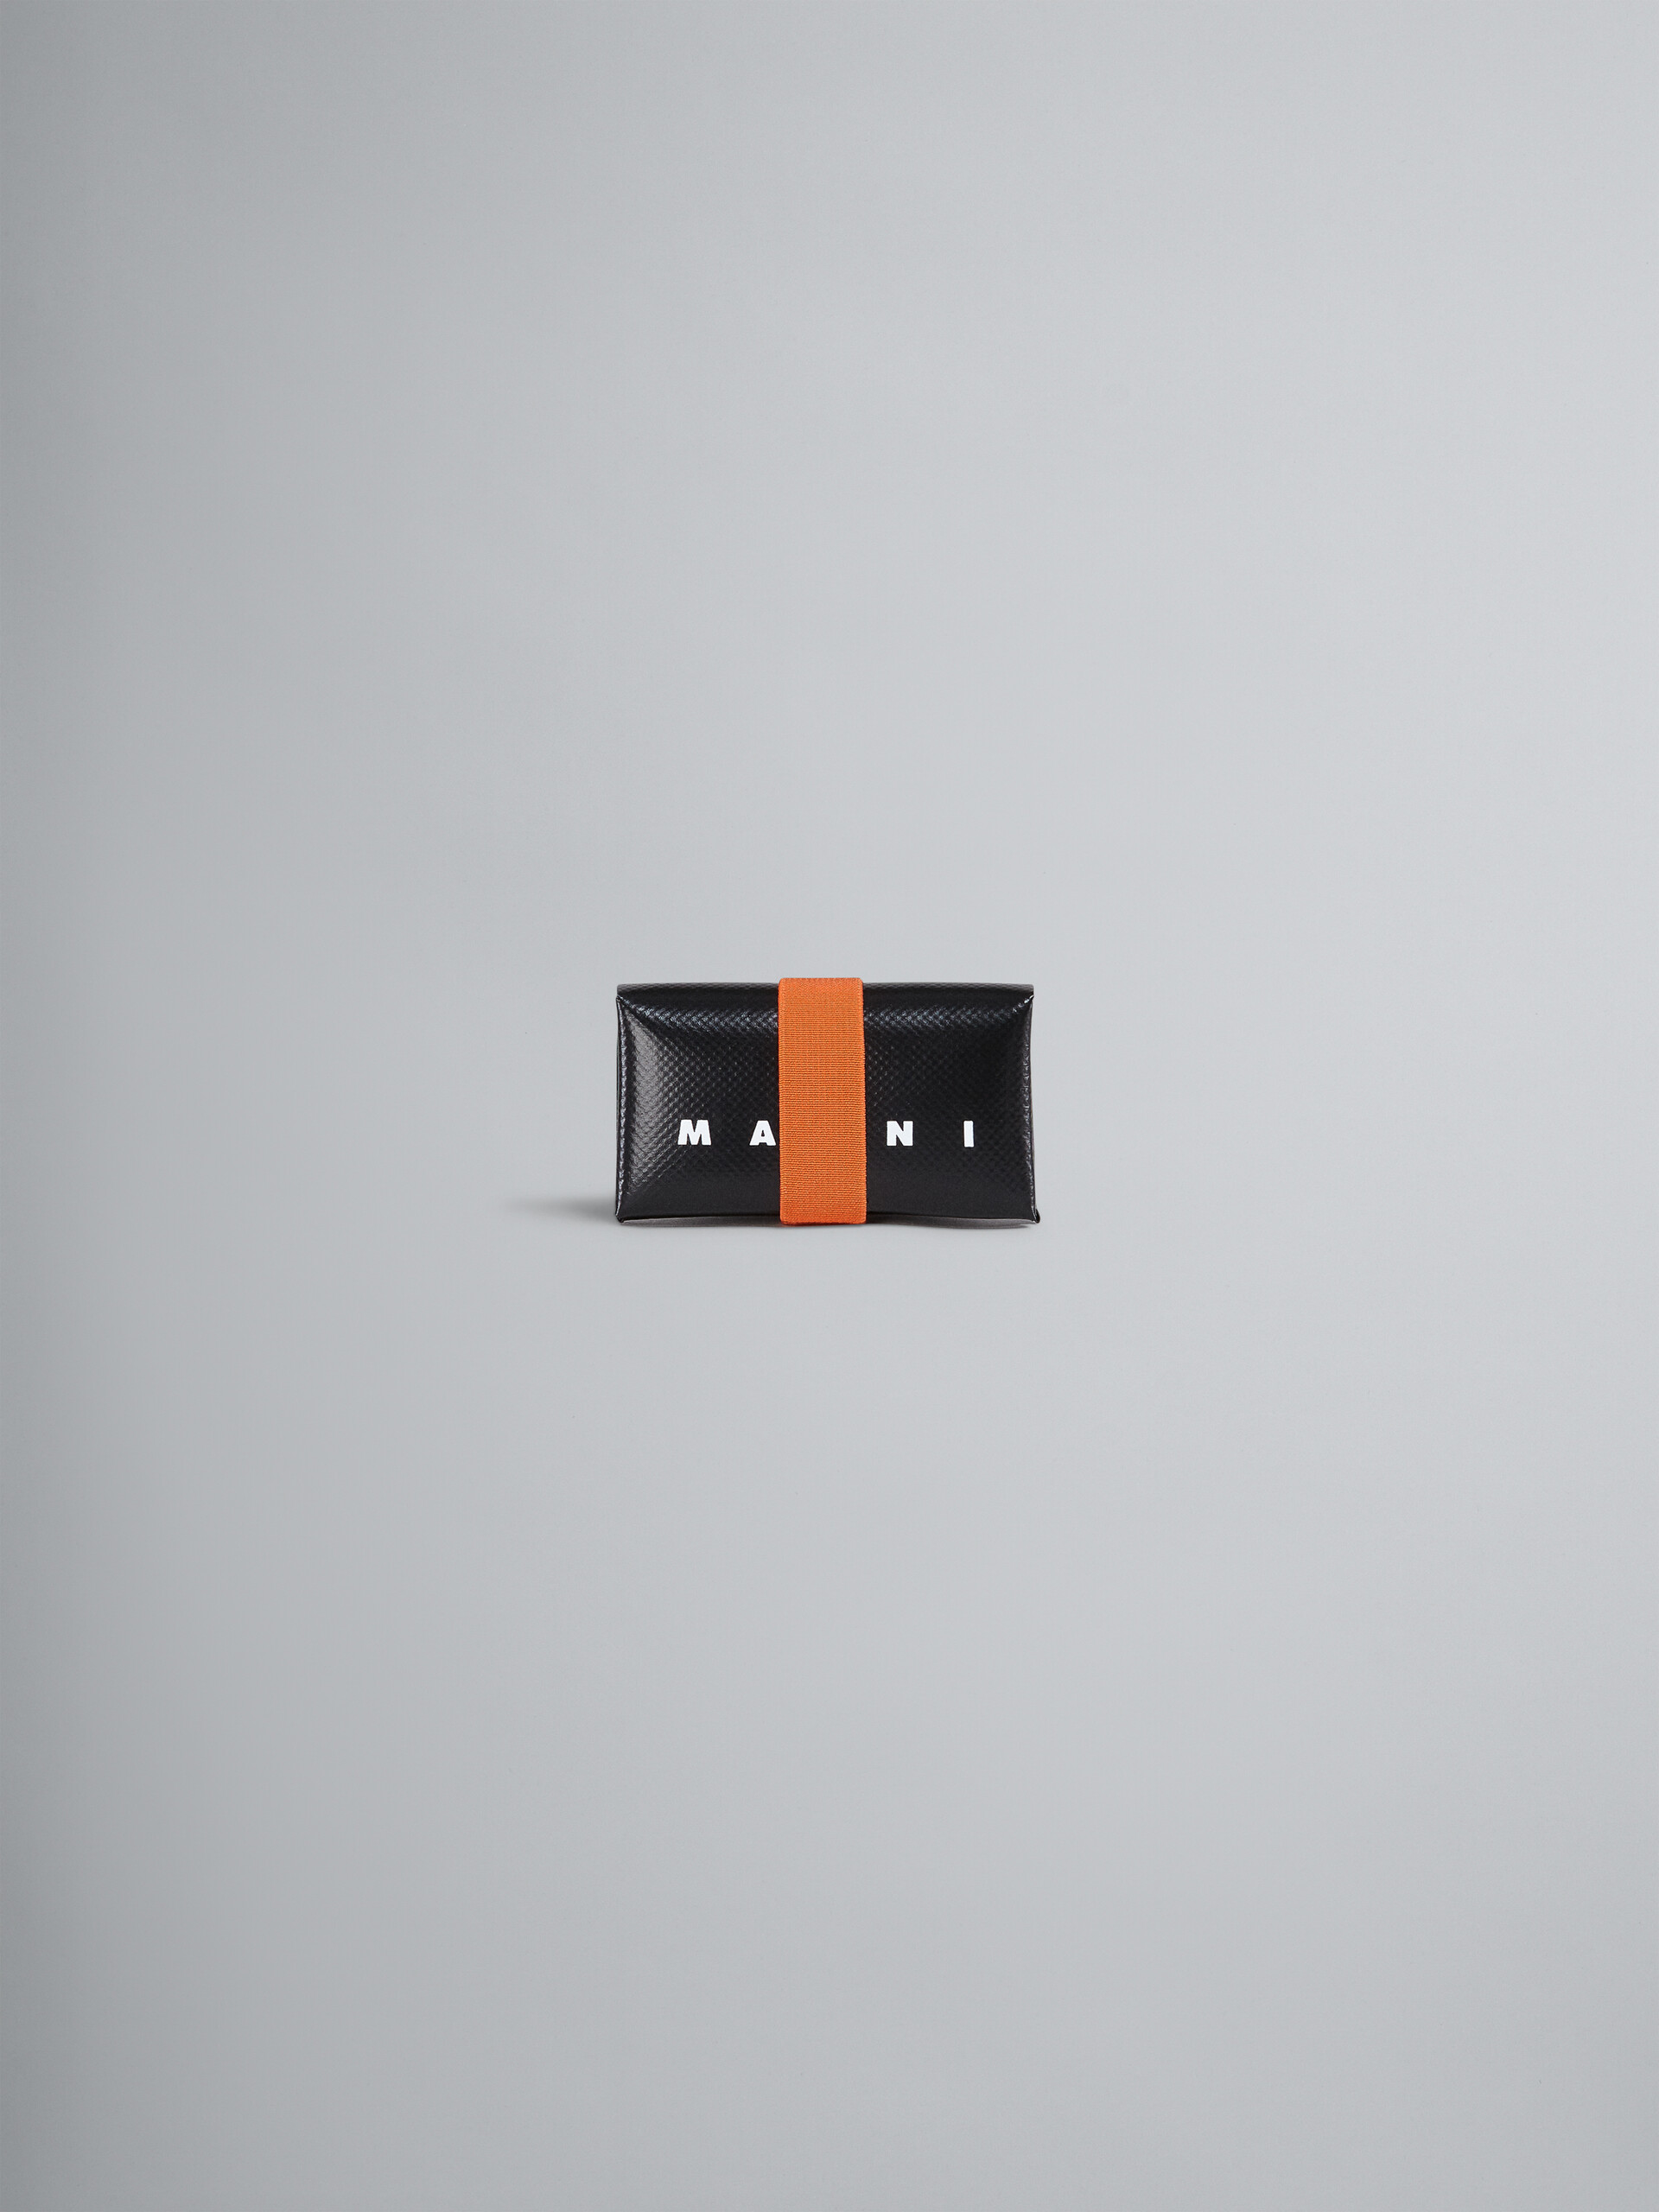 Portefeuille origami orange et noir - Portefeuilles - Image 1